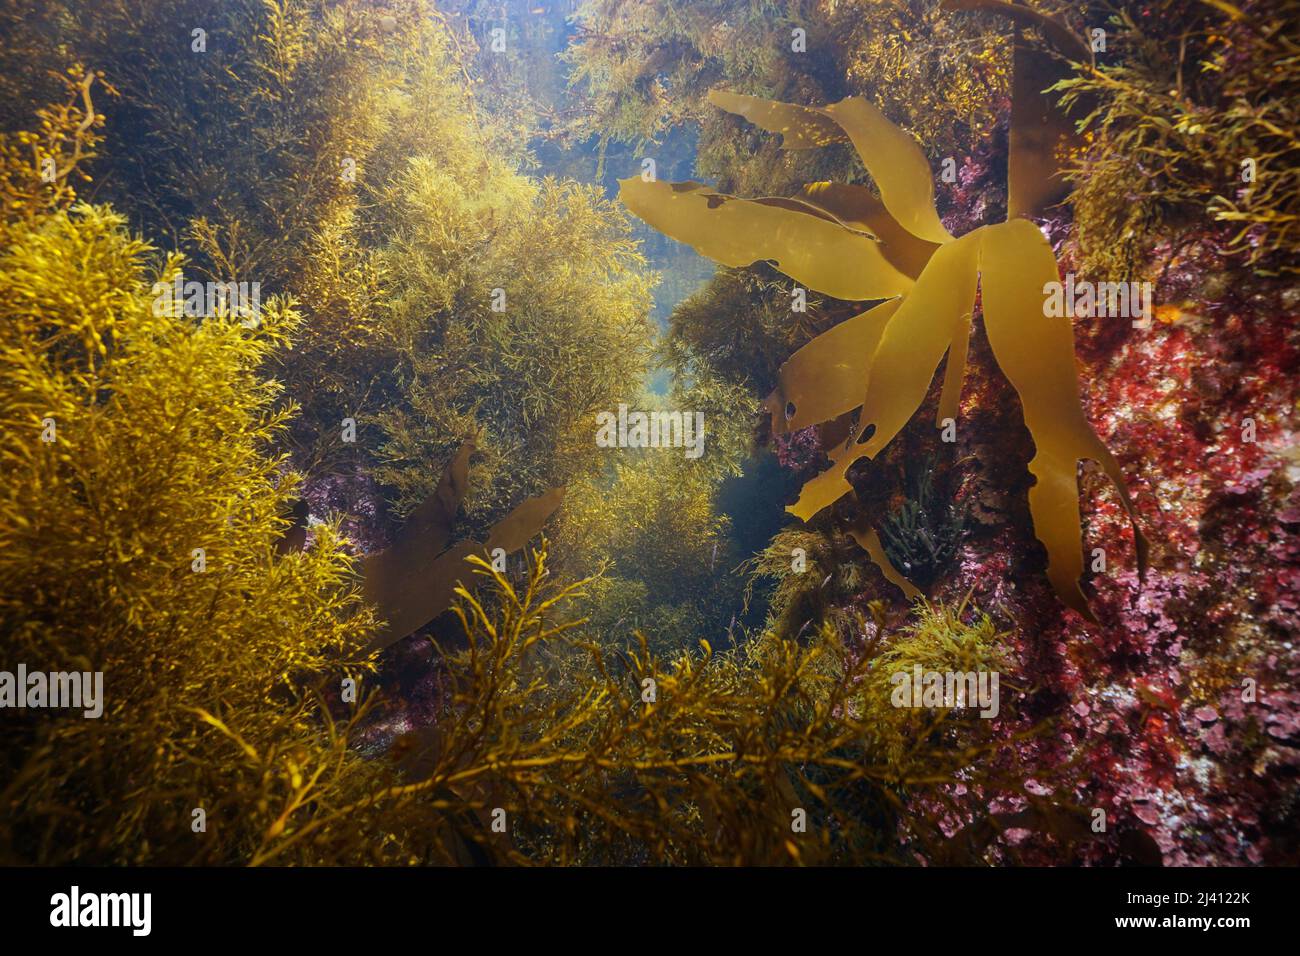 Seaweeds algae underwater in the Atlantic ocean, Spain, Galicia Stock Photo